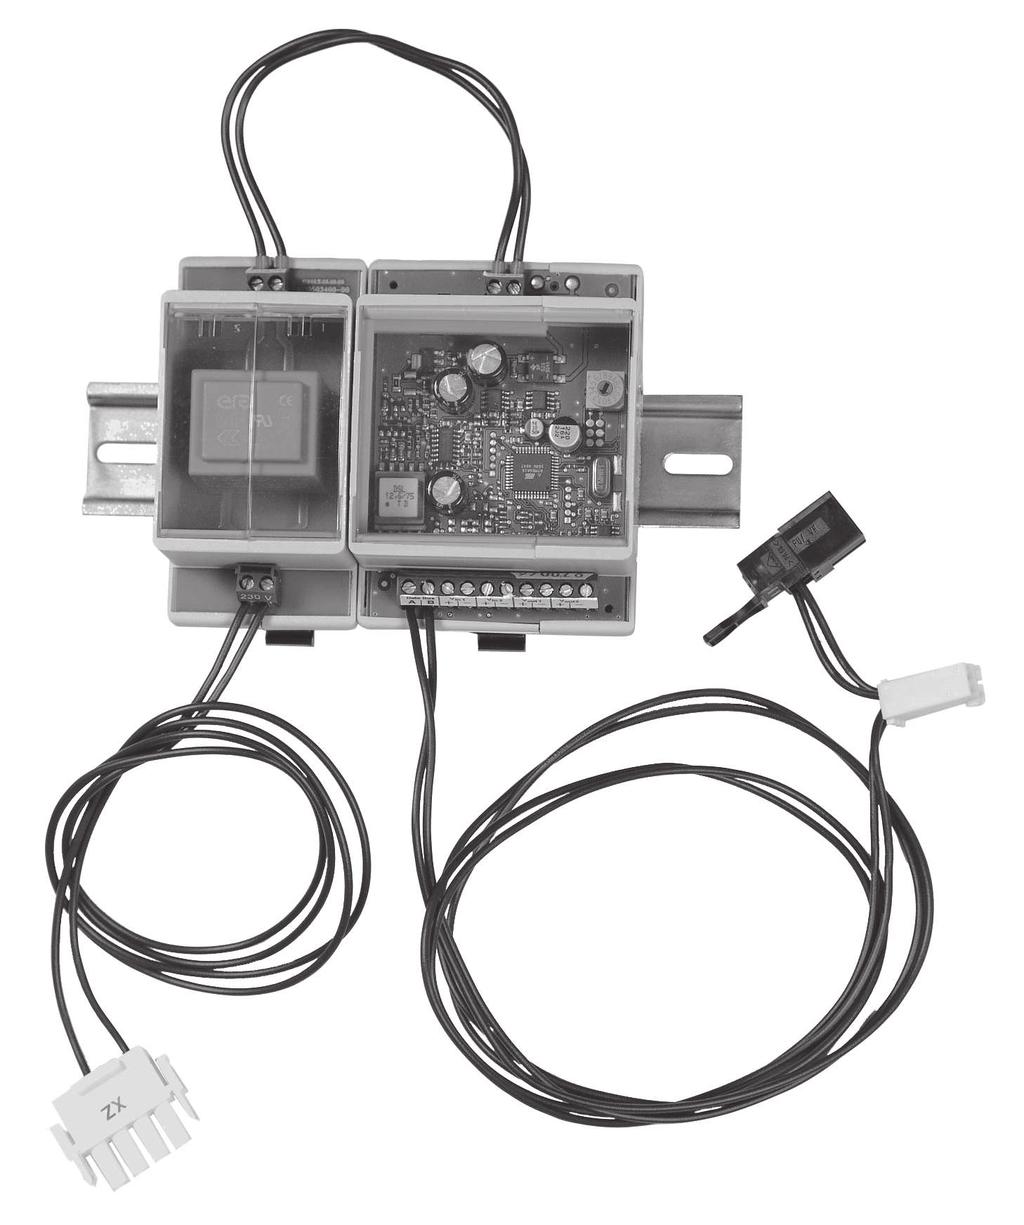 poate monta un singur modul cheie! Senzor tur VF202K cu 2 m cablu si conector cablu.